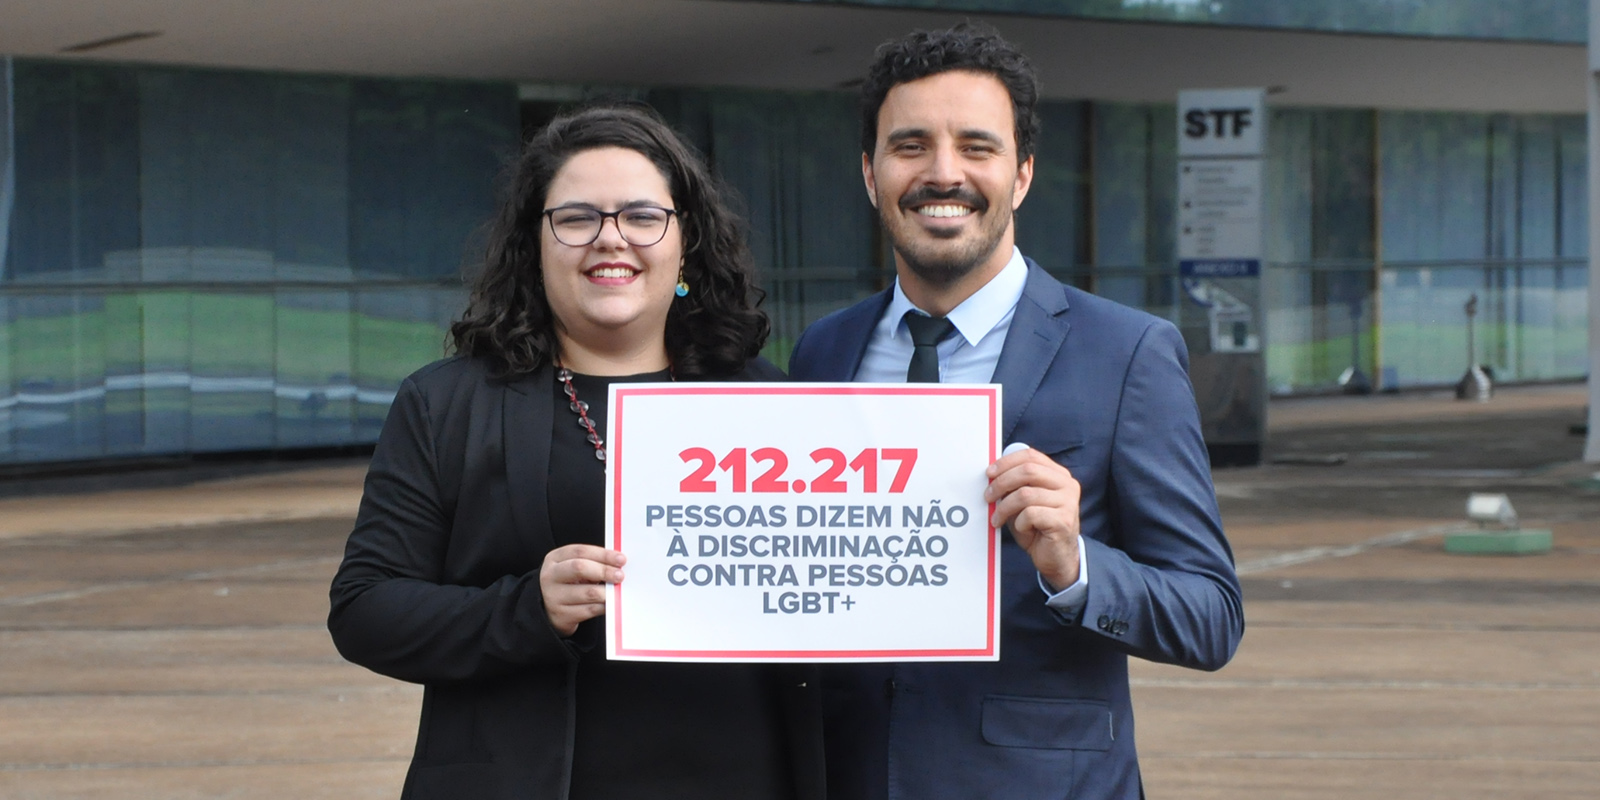 Imagen de la entrega de firmas en la Corte Suprema de Brasil